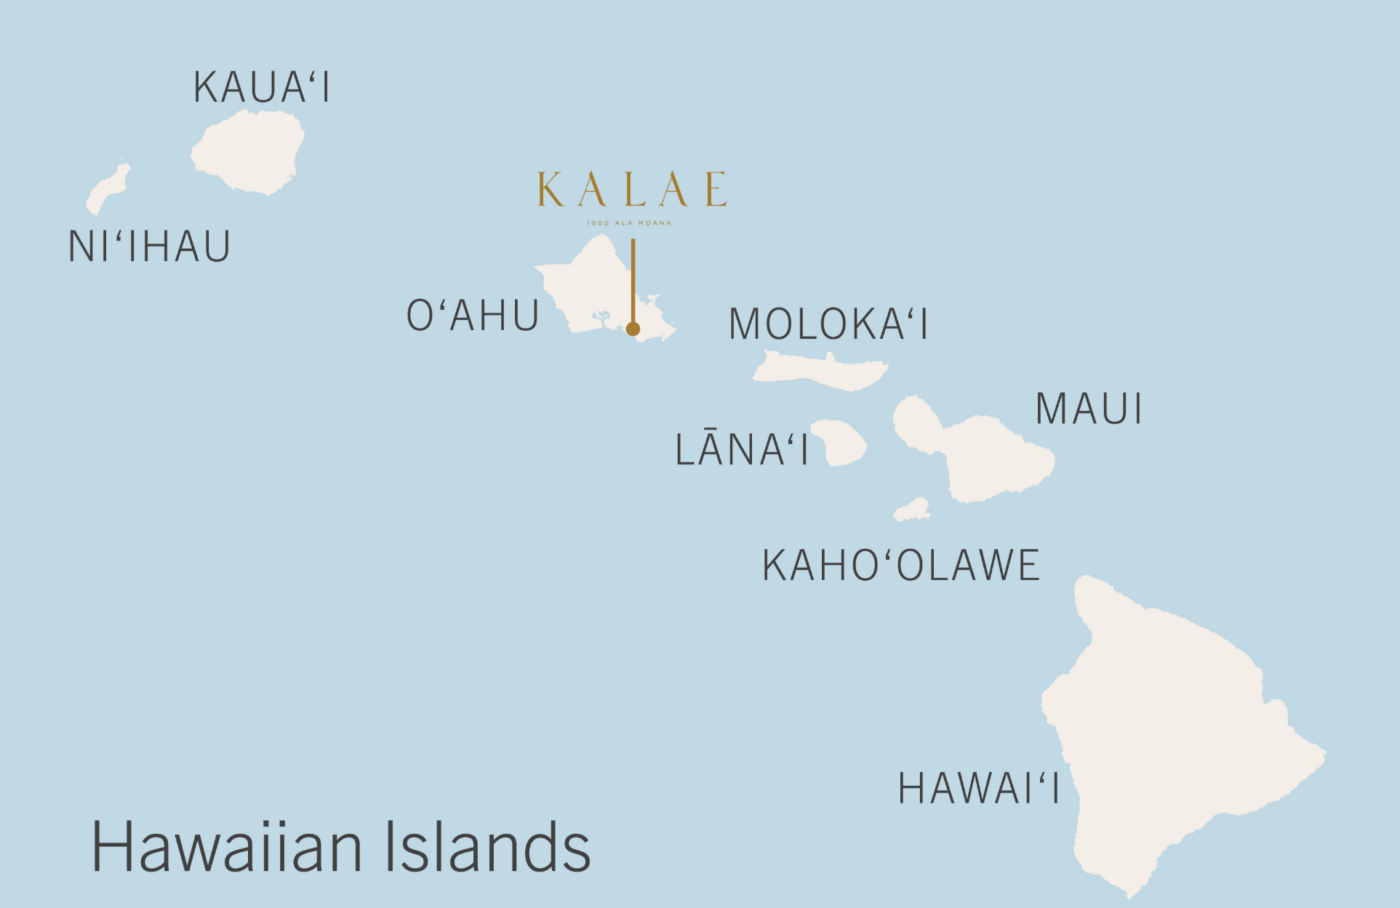 夏威夷地图上有欧胡岛的Kalae电话。